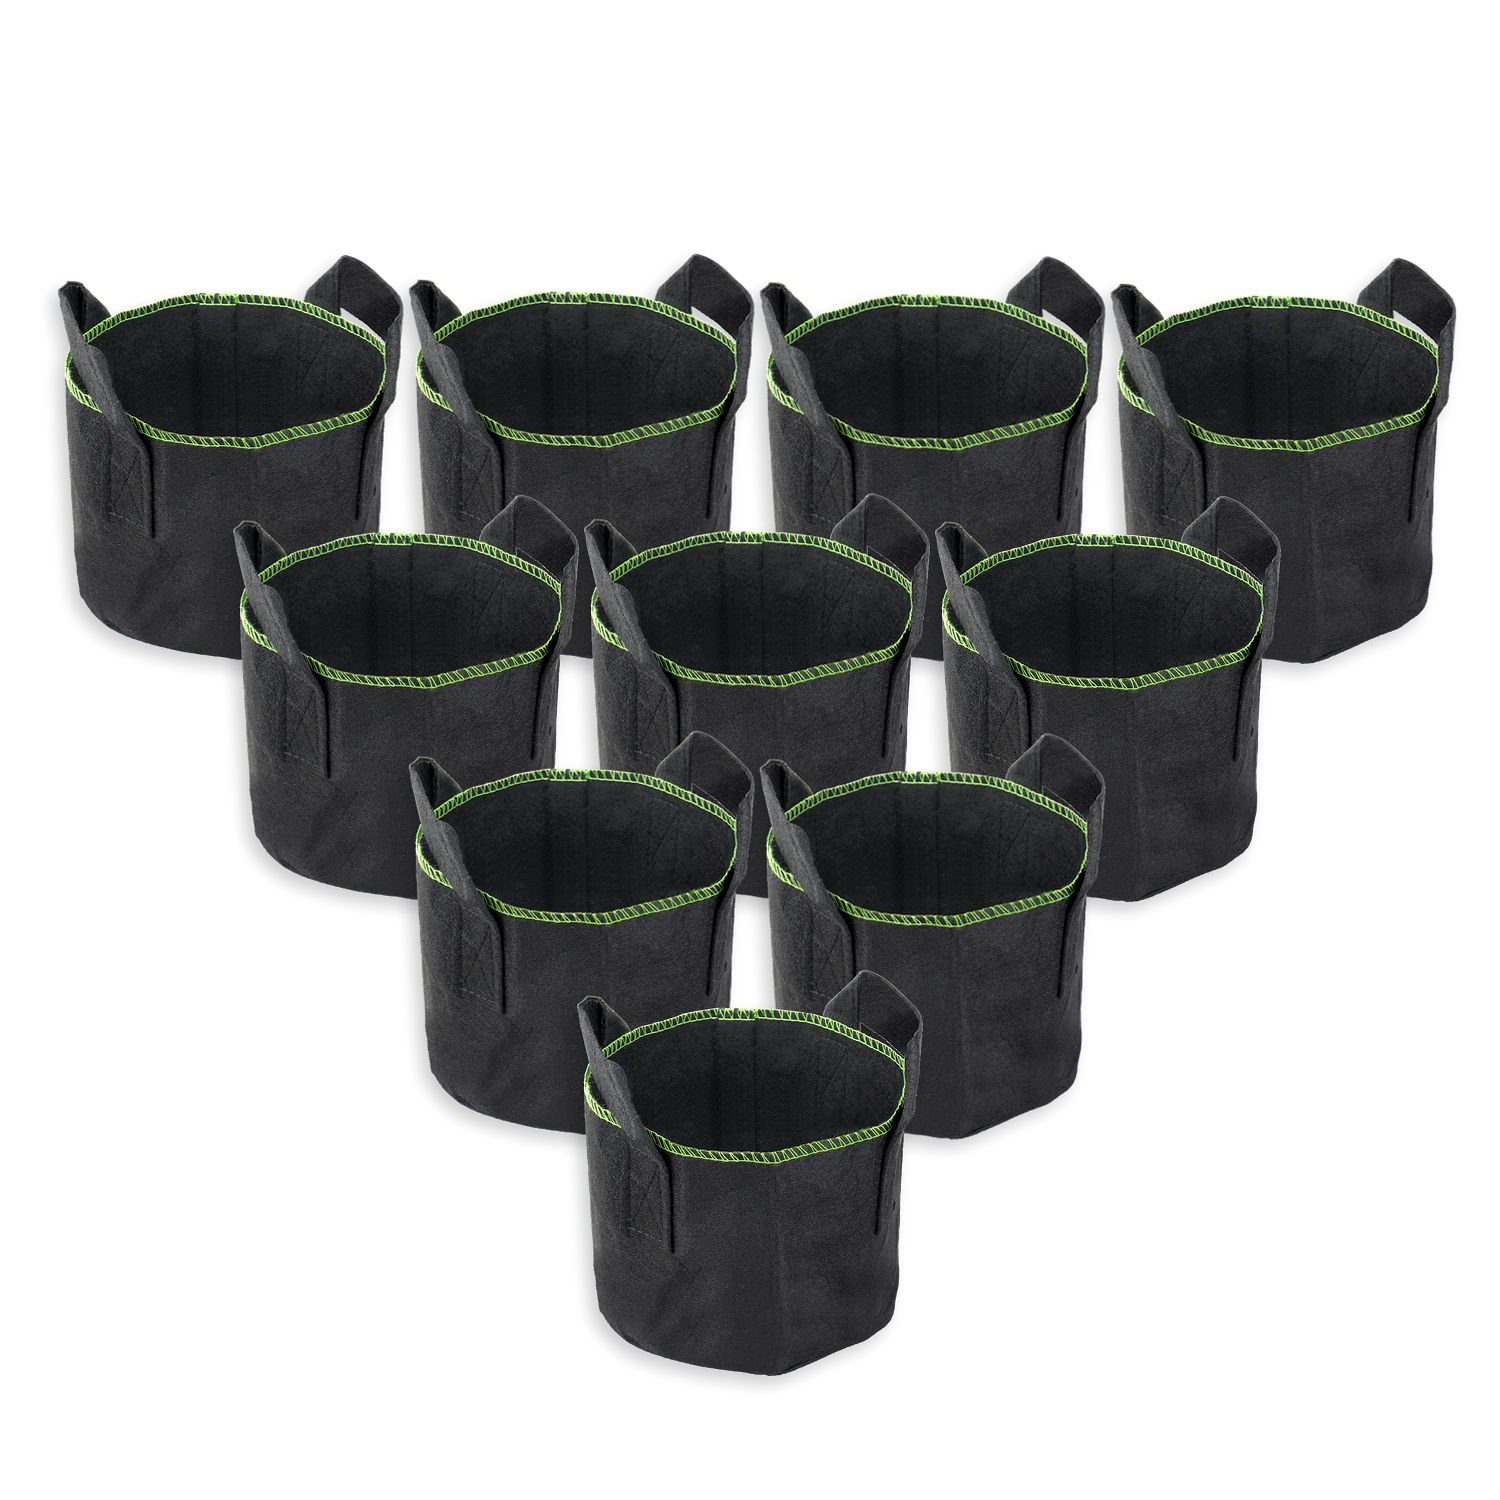 Schramm Pflanzkübel Schramm® 10 Stück Pflanzsäcke aus Filz 3,5 Liter Pflanzsack Garten Sack Vlies zum Bepflanzen Pflanzgefäß